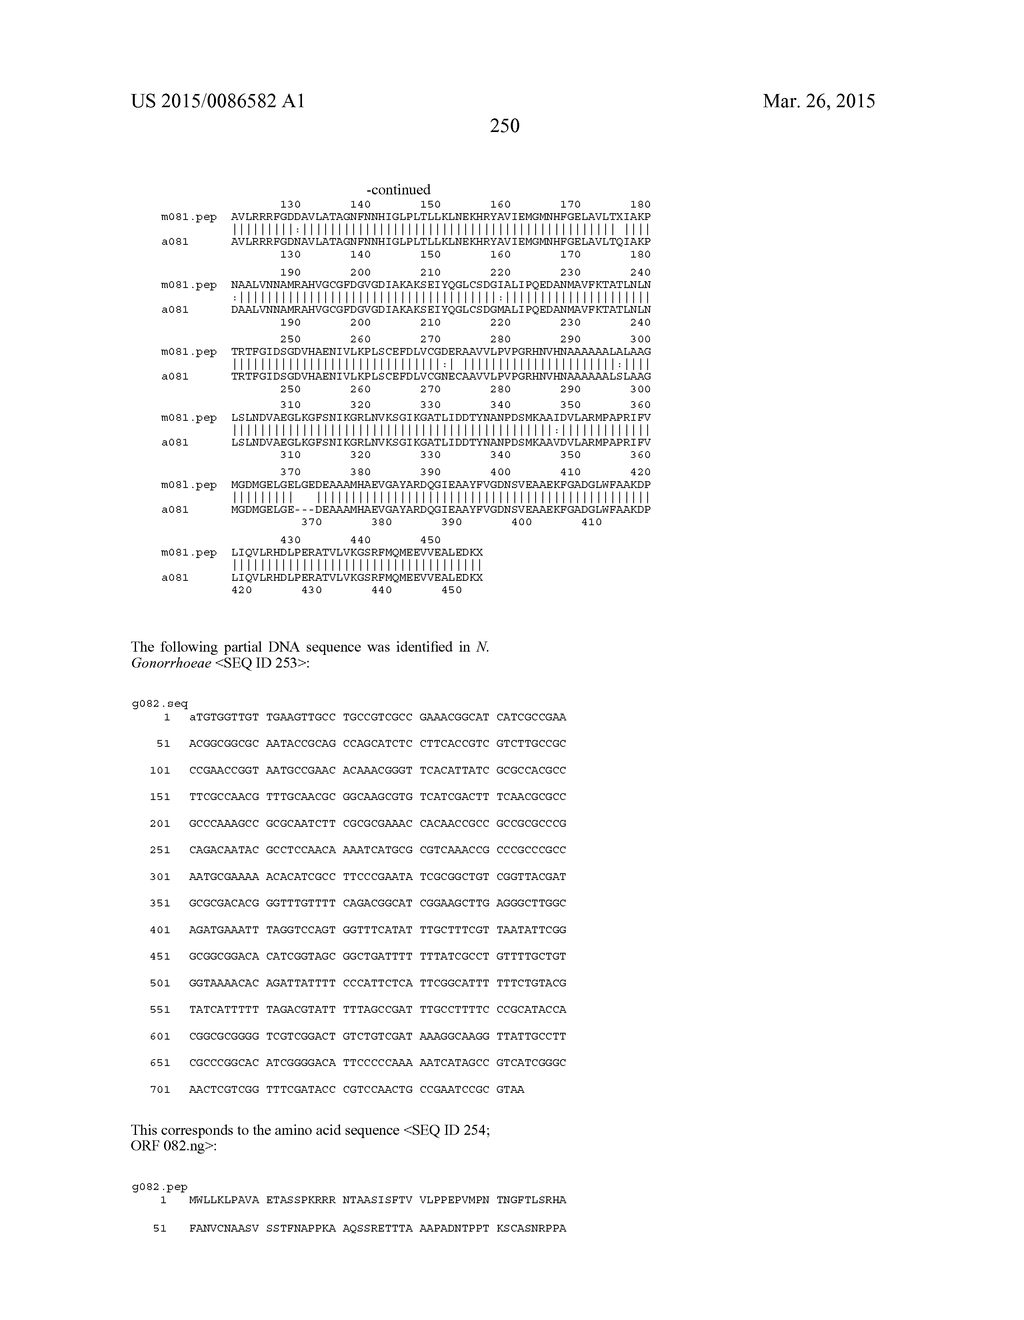 NEISSERIA MENINGITIDIS ANTIGENS AND COMPOSITIONS - diagram, schematic, and image 282